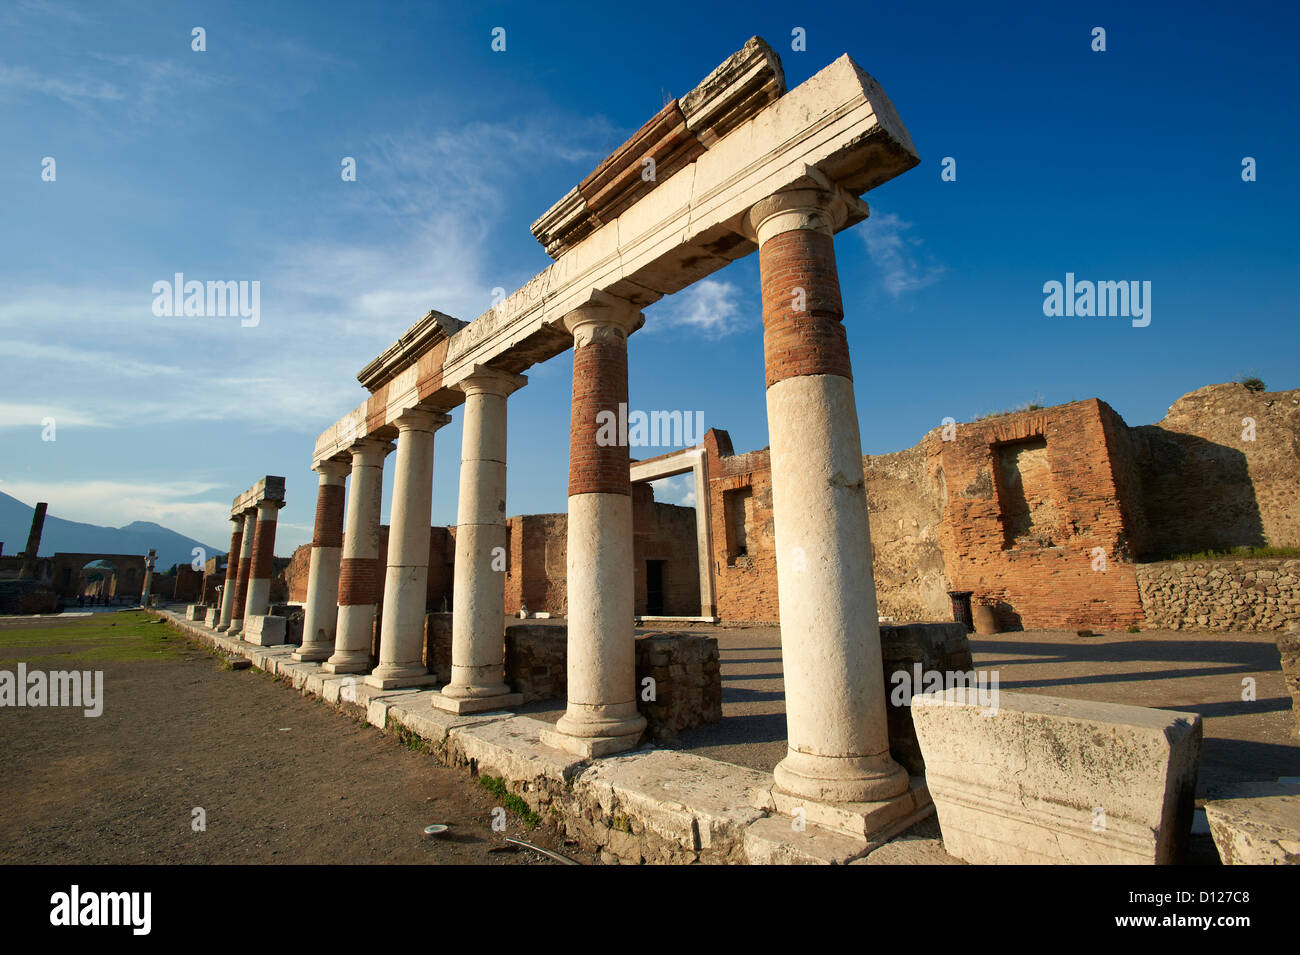 Les colonnes romaines de la construction d'Eumachia, Pompéi Italie Banque D'Images